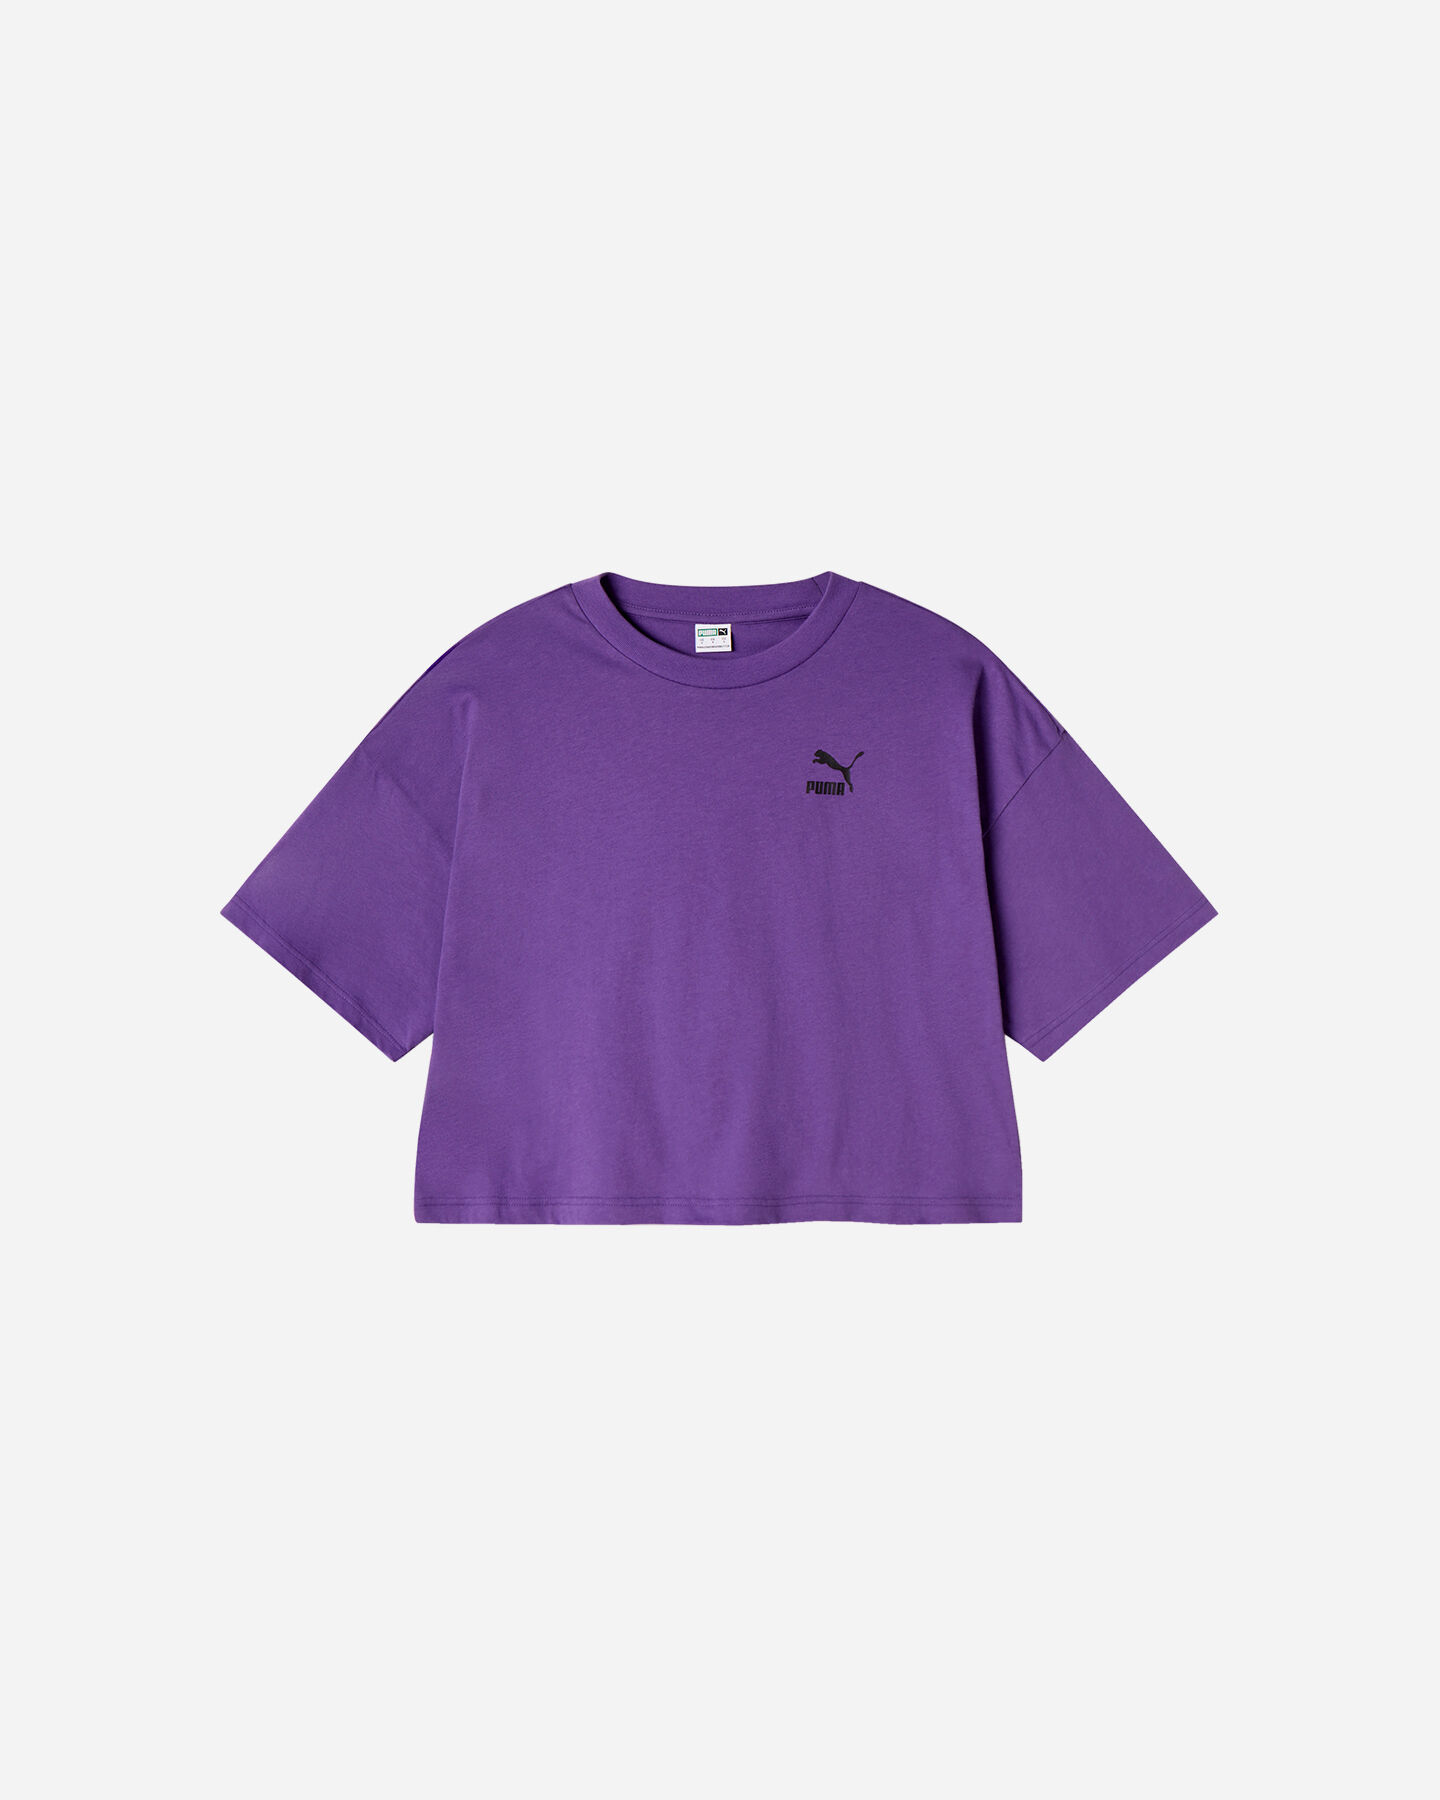  T-Shirt PUMA BIG LOGO W S5615075|18|L scatto 0